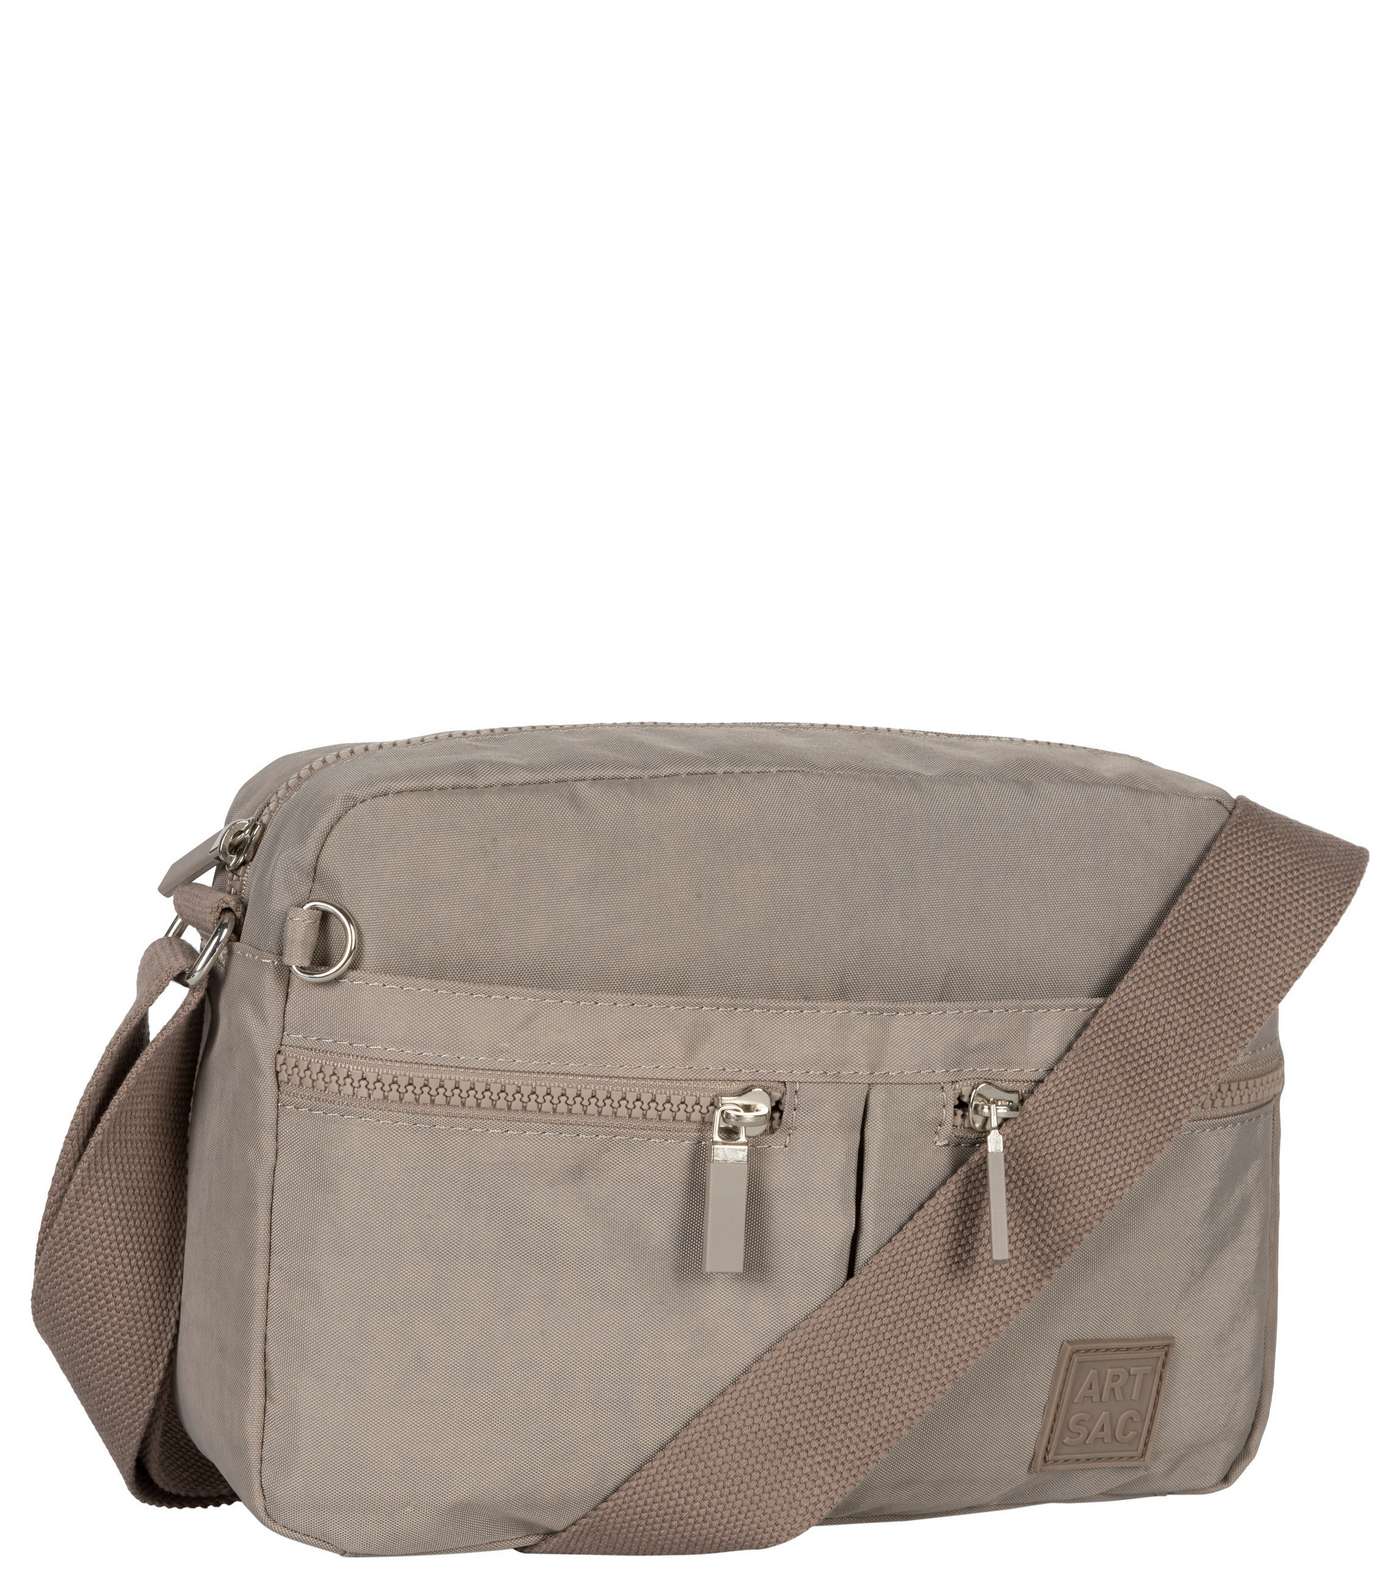 Artsac Grey Double Zip Pocket Cross Body Bag Image 2